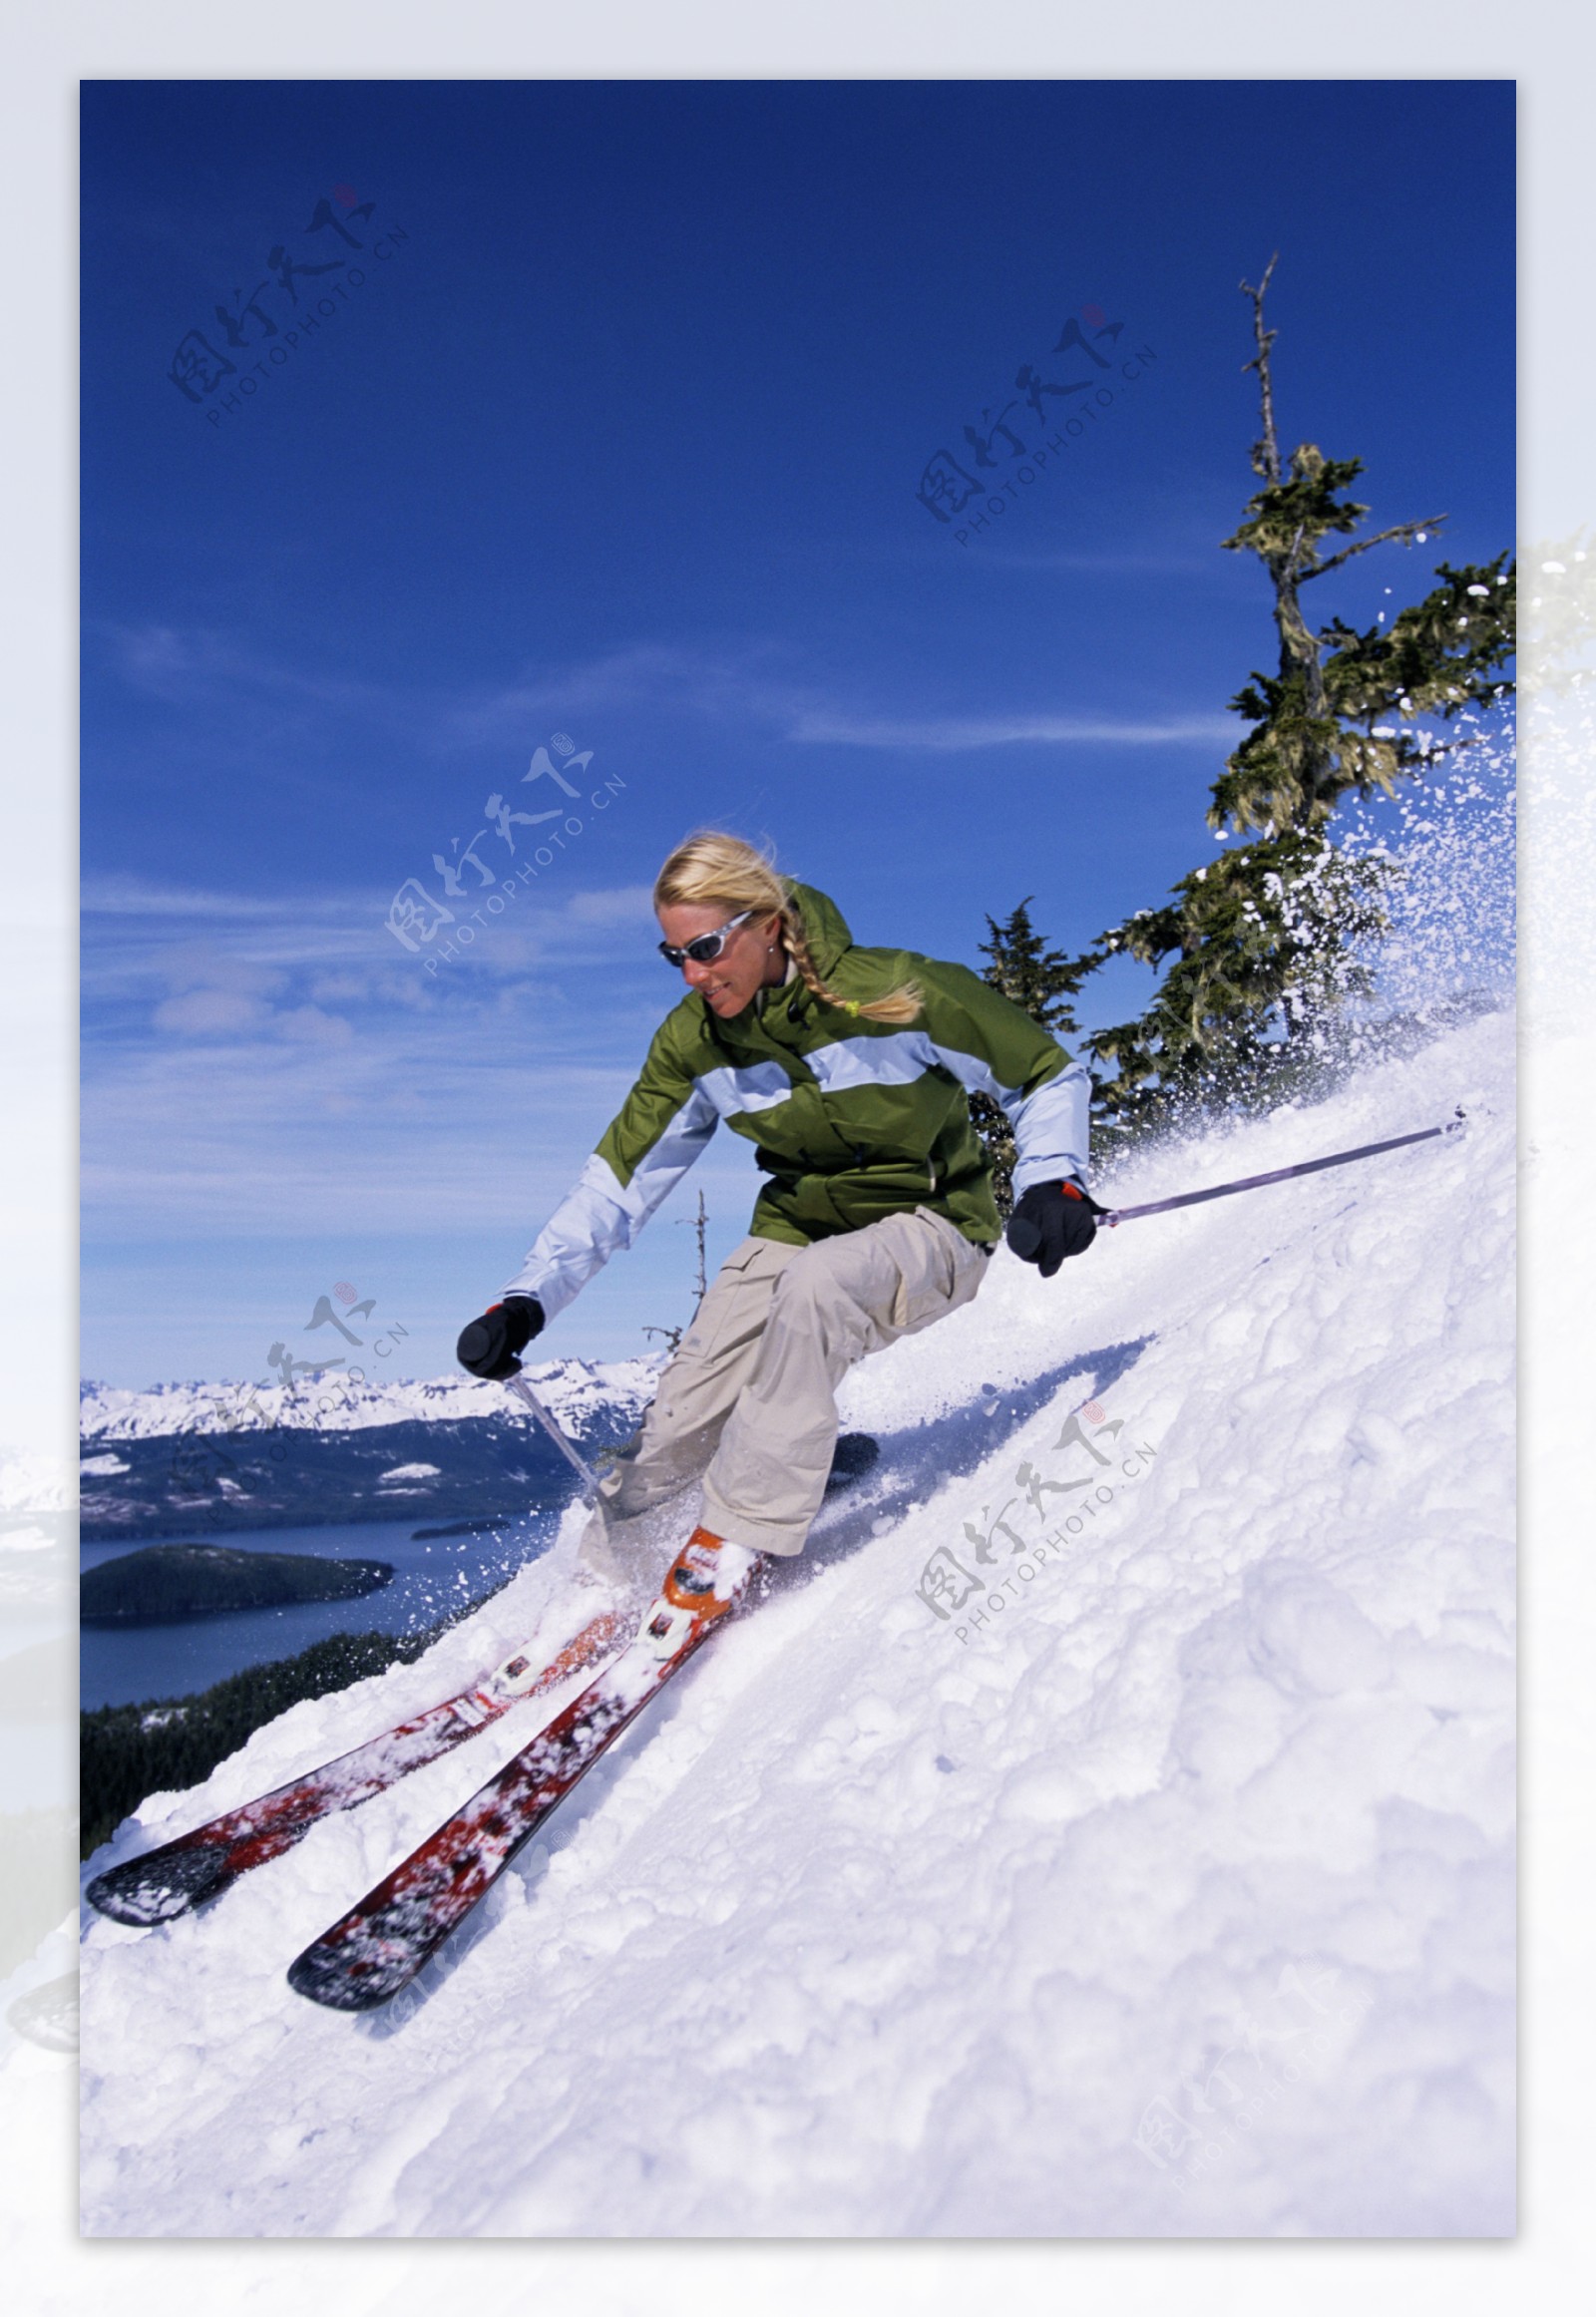 正在滑雪的人